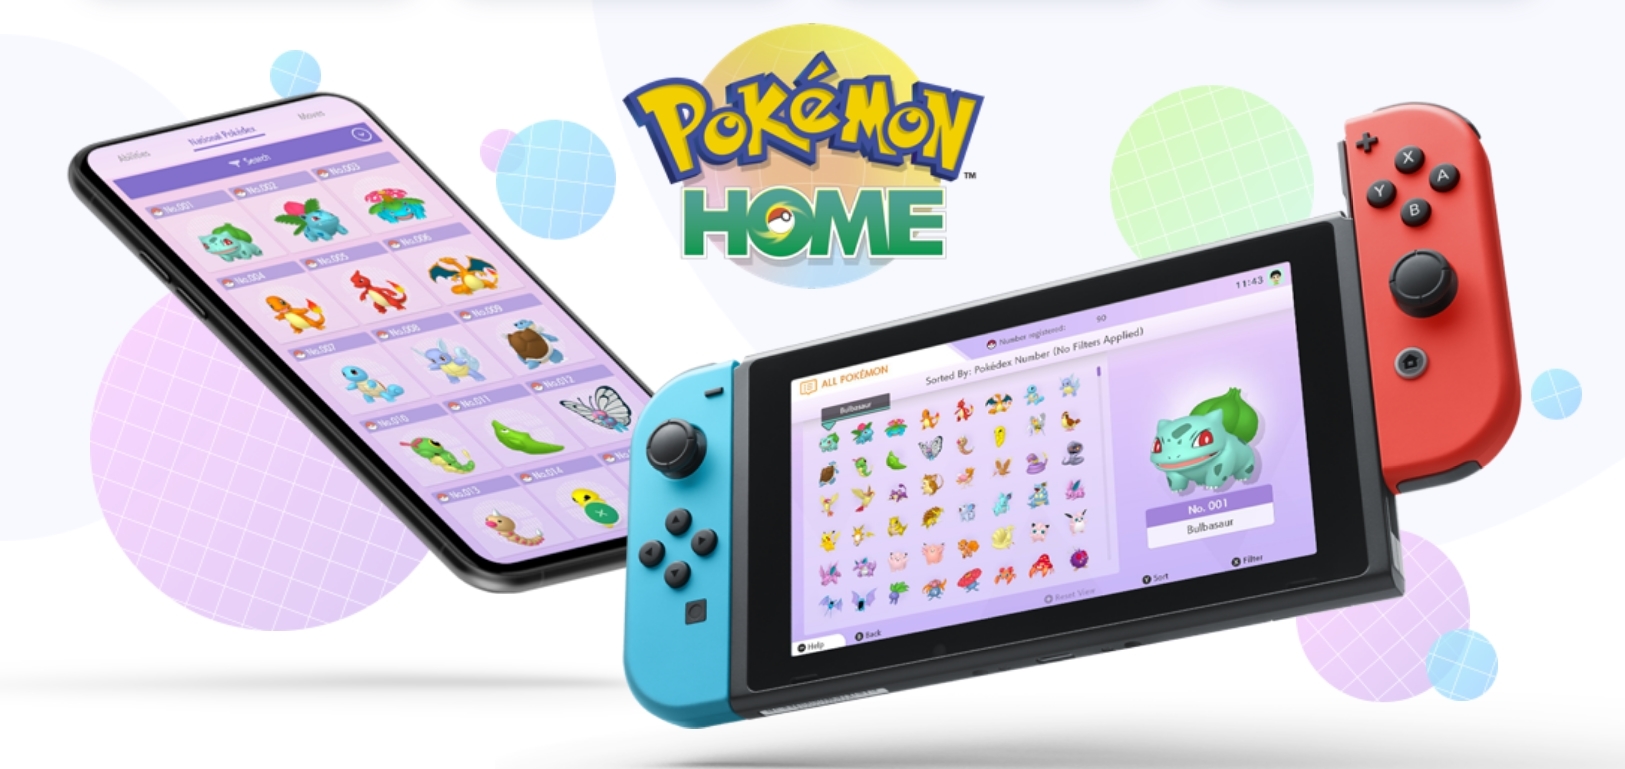 Pokemon Home melewati 1 juta unduhan seluler selama minggu pertama 1